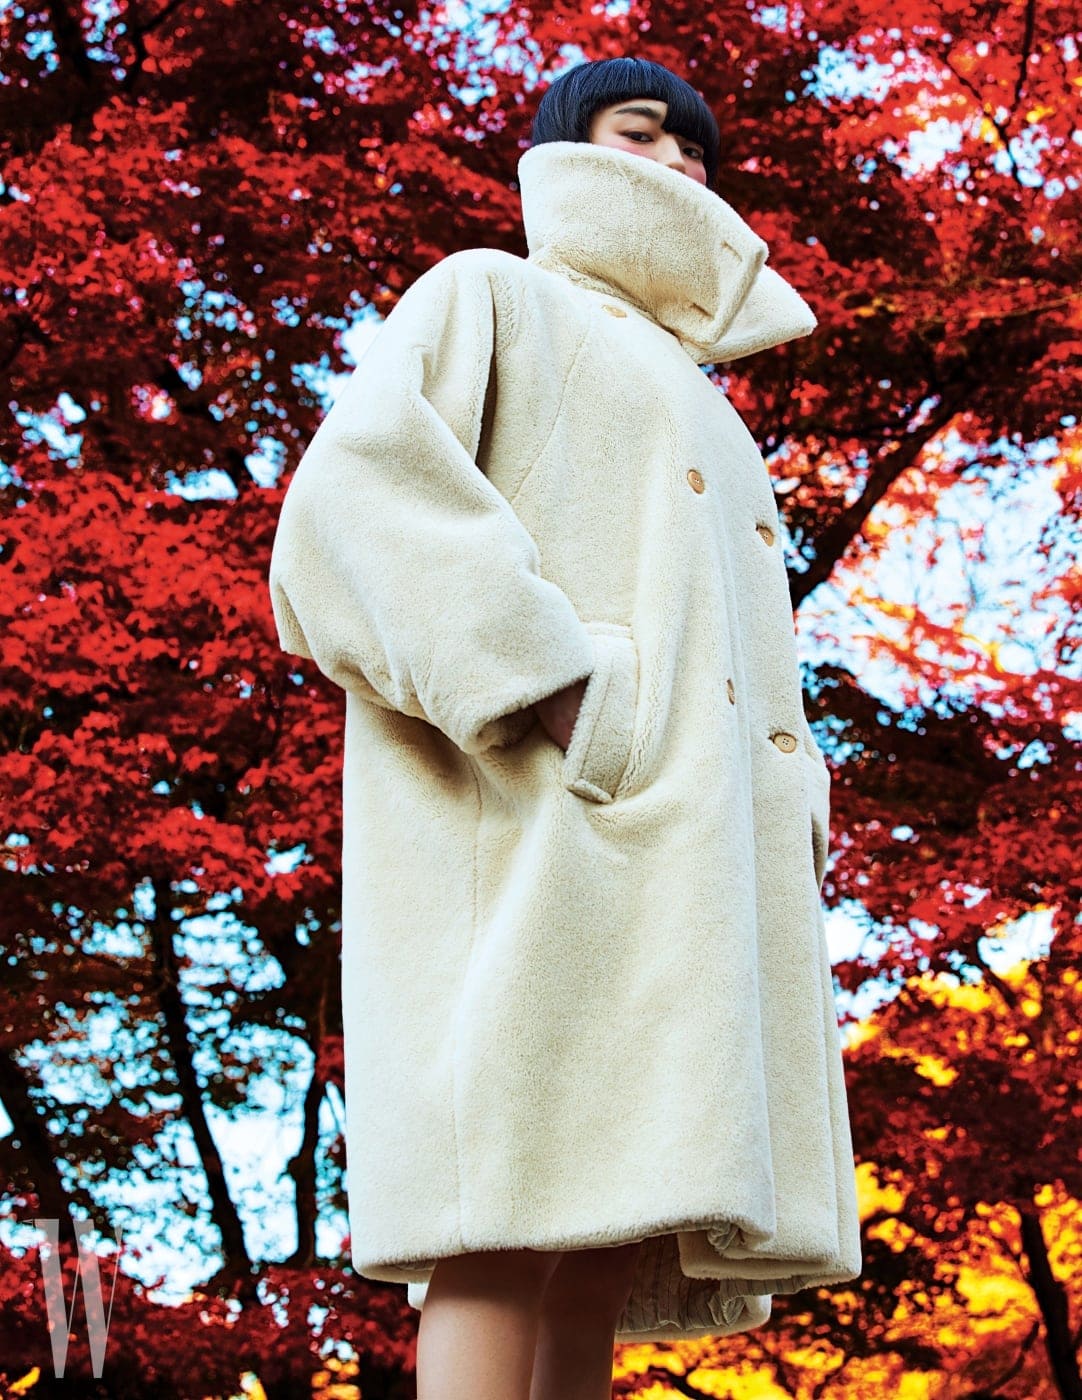 포근한 소재감과 캐주얼하고 모던한 디자인이 돋보이는 테디베어 코트. 최근 막스마라 F/W 컬렉션까지, 매년 다양한 색상으로 진화해온 막스마라의 아이코닉 코트 중 하나이다. 